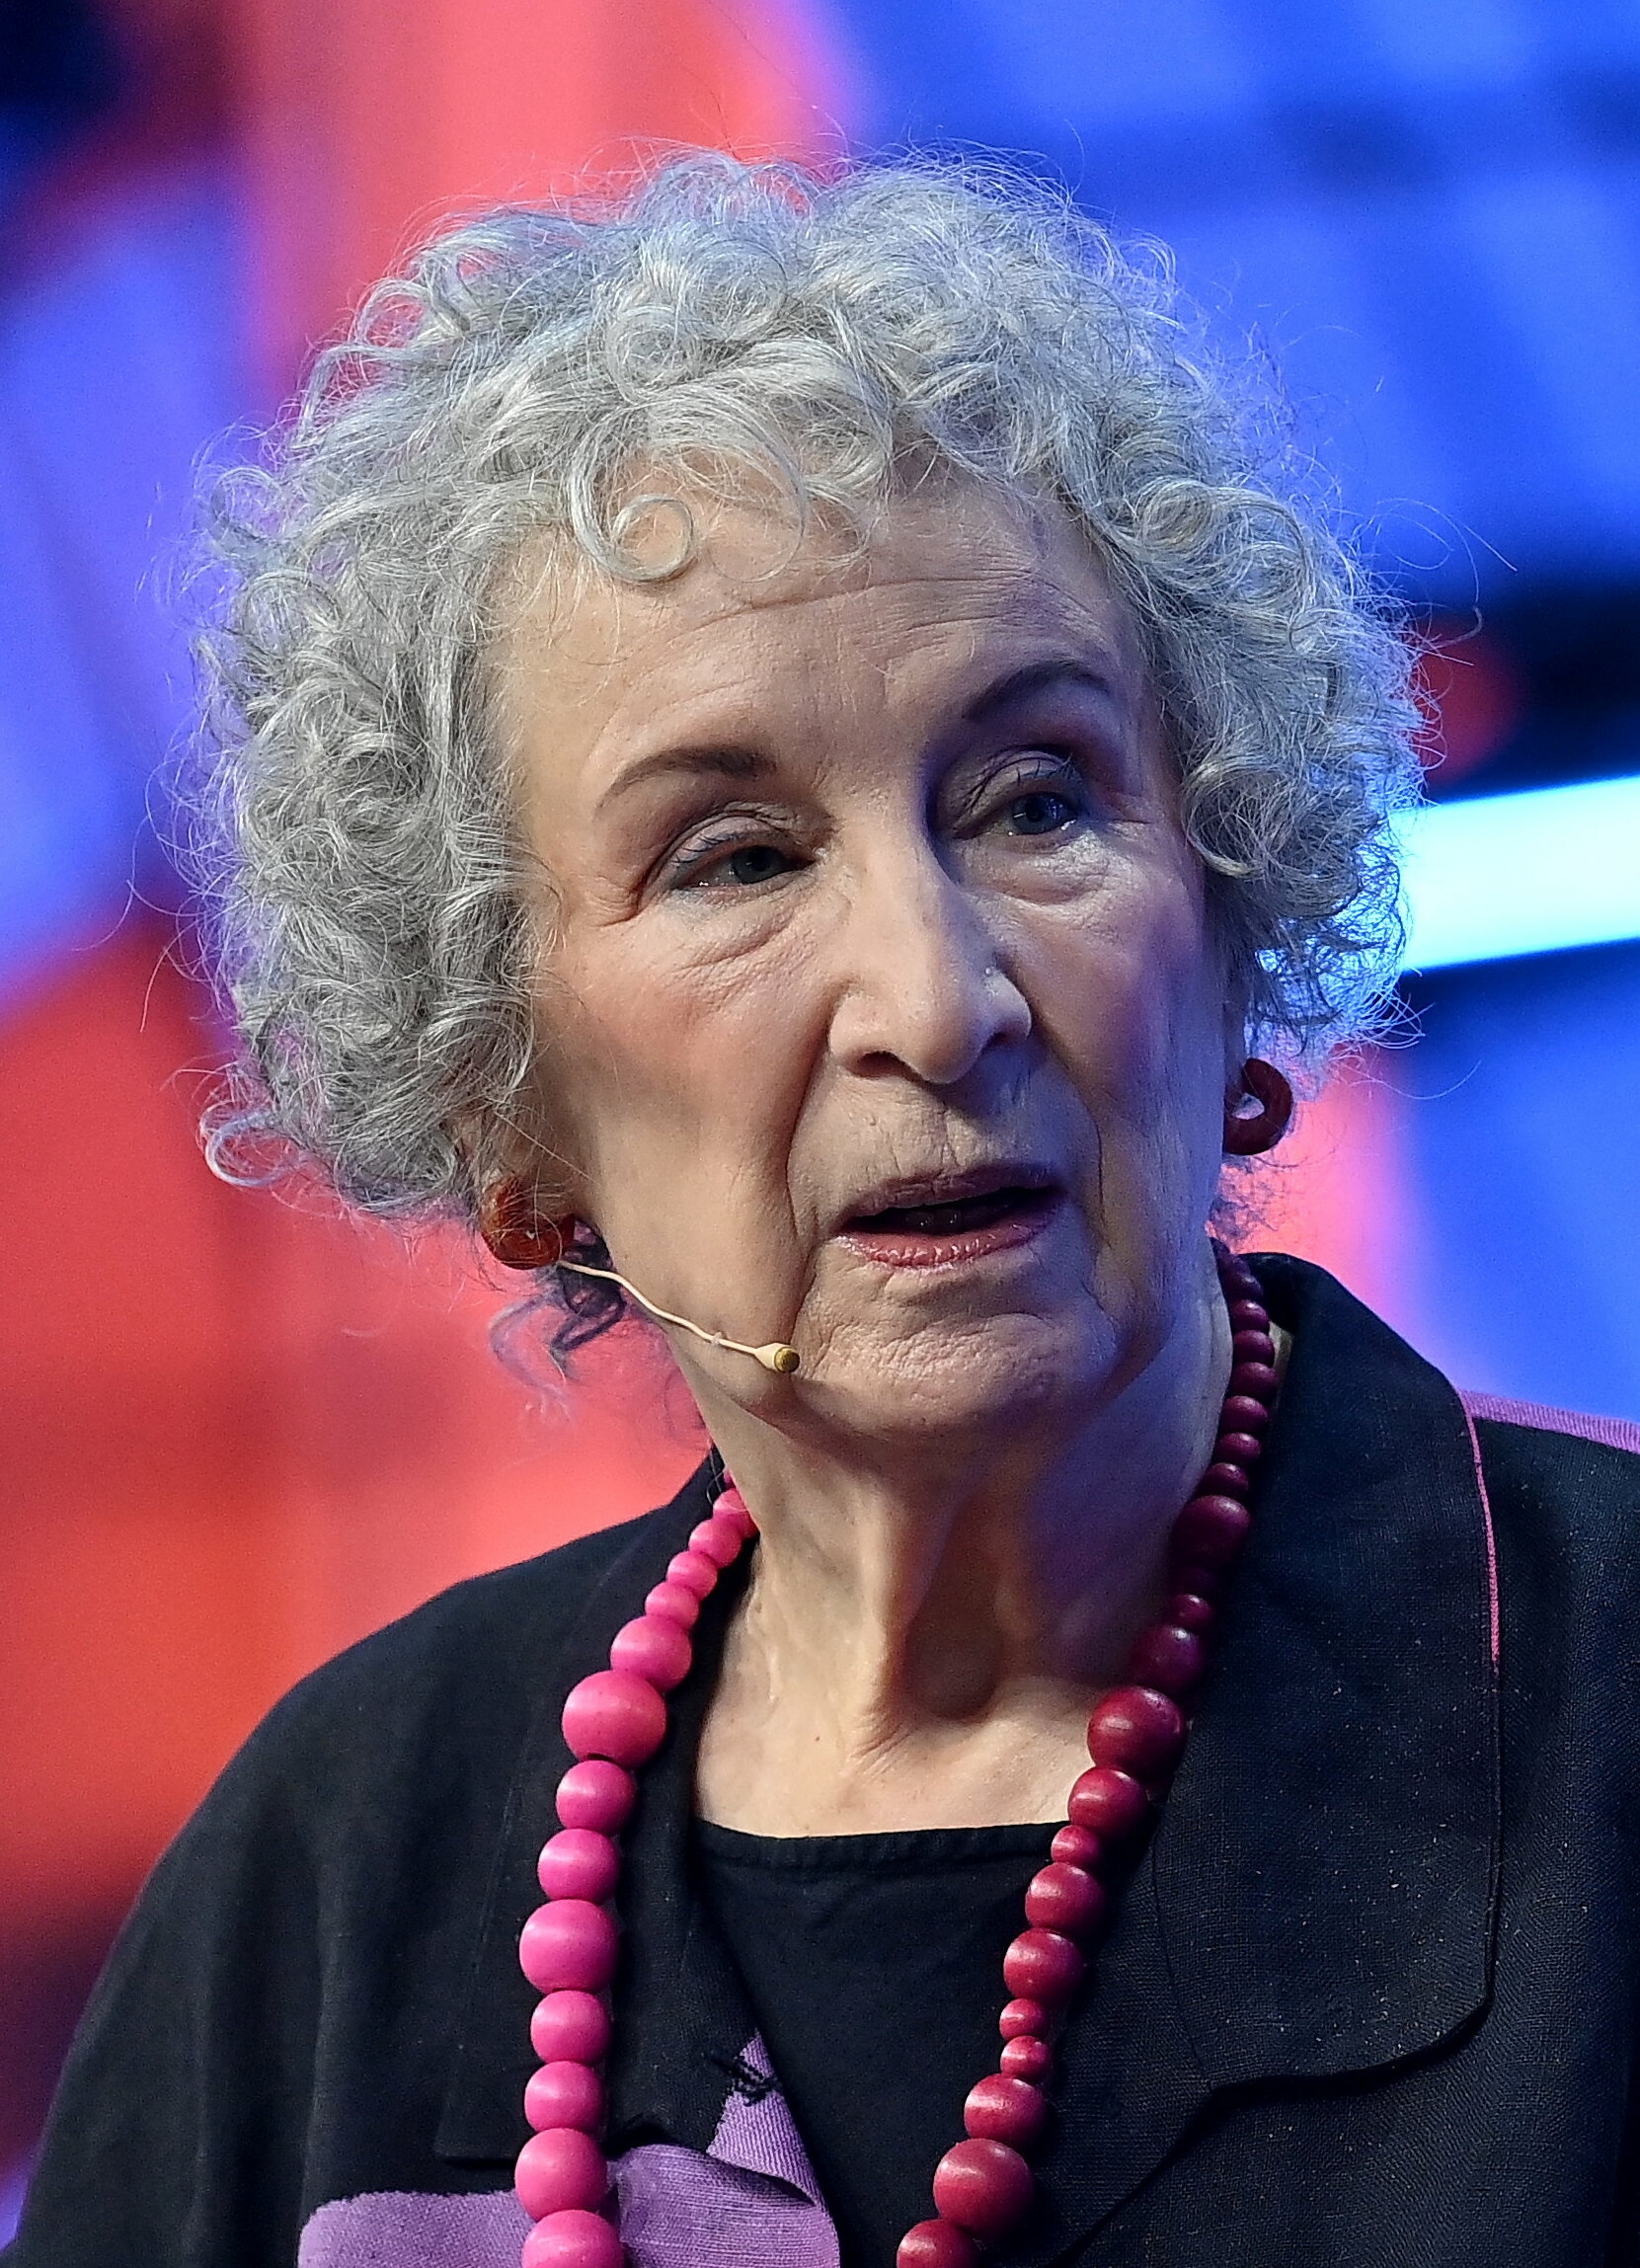 auteur Margaret Atwood de la citation Si la stabilité sociale est en forme de poire, vous avez le choix entre l'anarchie et la dictature. La plupart des gens opteront pour plus de sécurité, même s'ils doivent abandonner une certaine liberté personnelle.